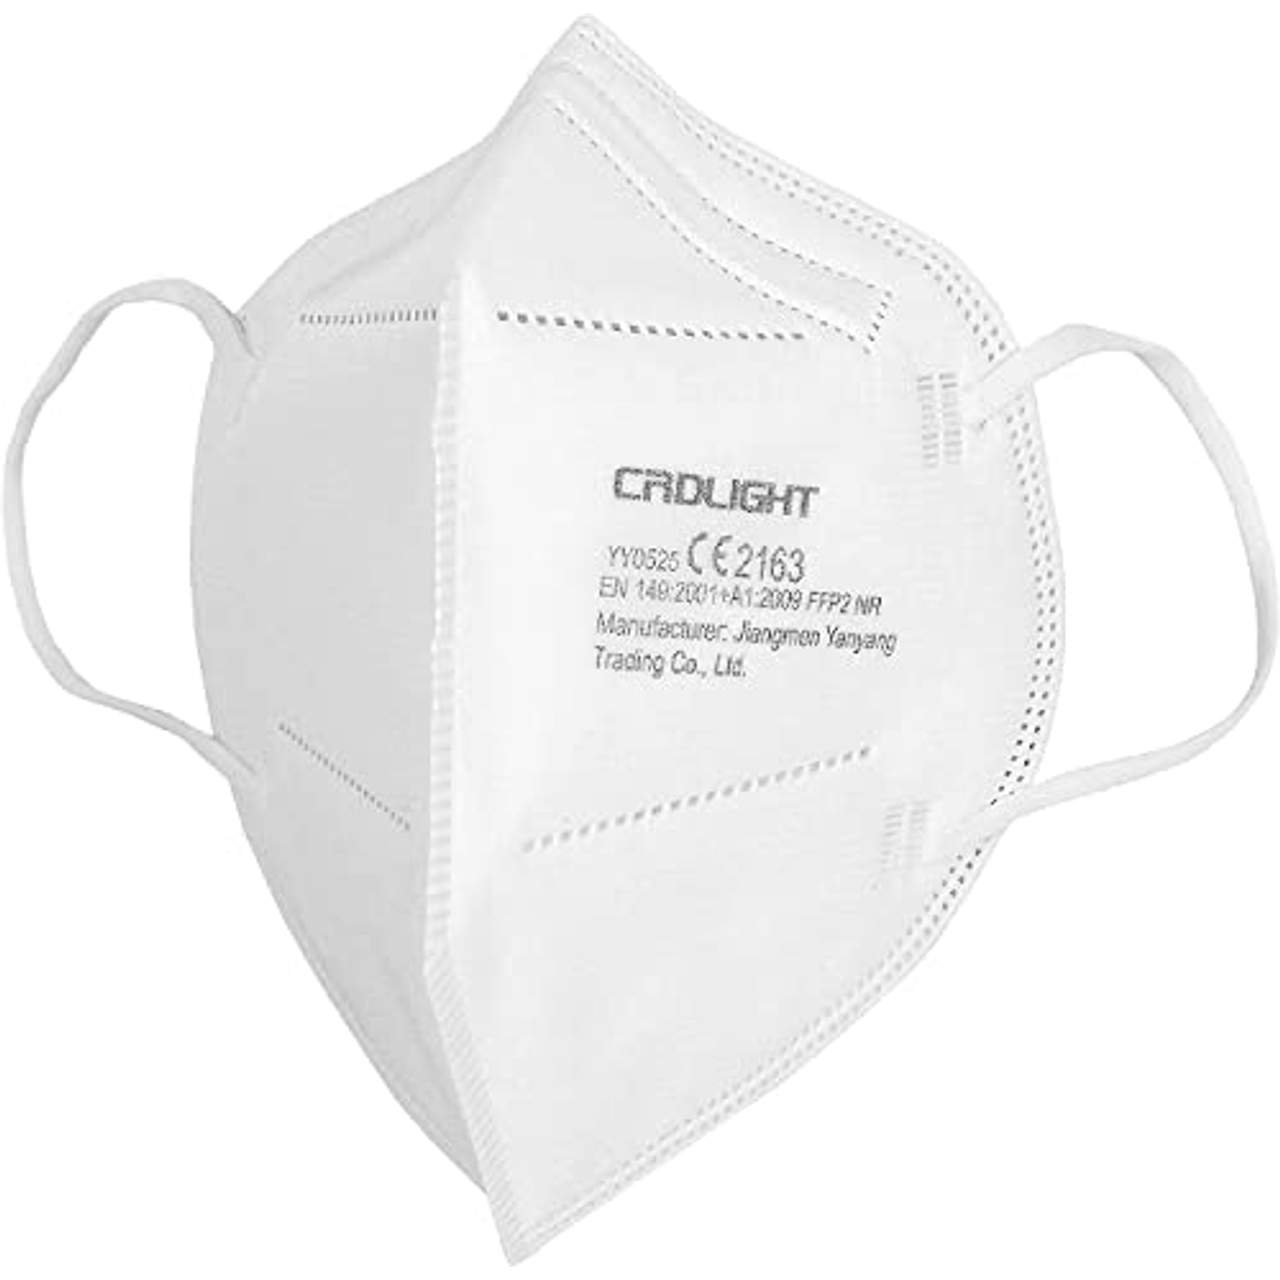 50 FFP2 Masken CE 2163 Atemschutzmaske Einzelverpackung in PE-Beuteln